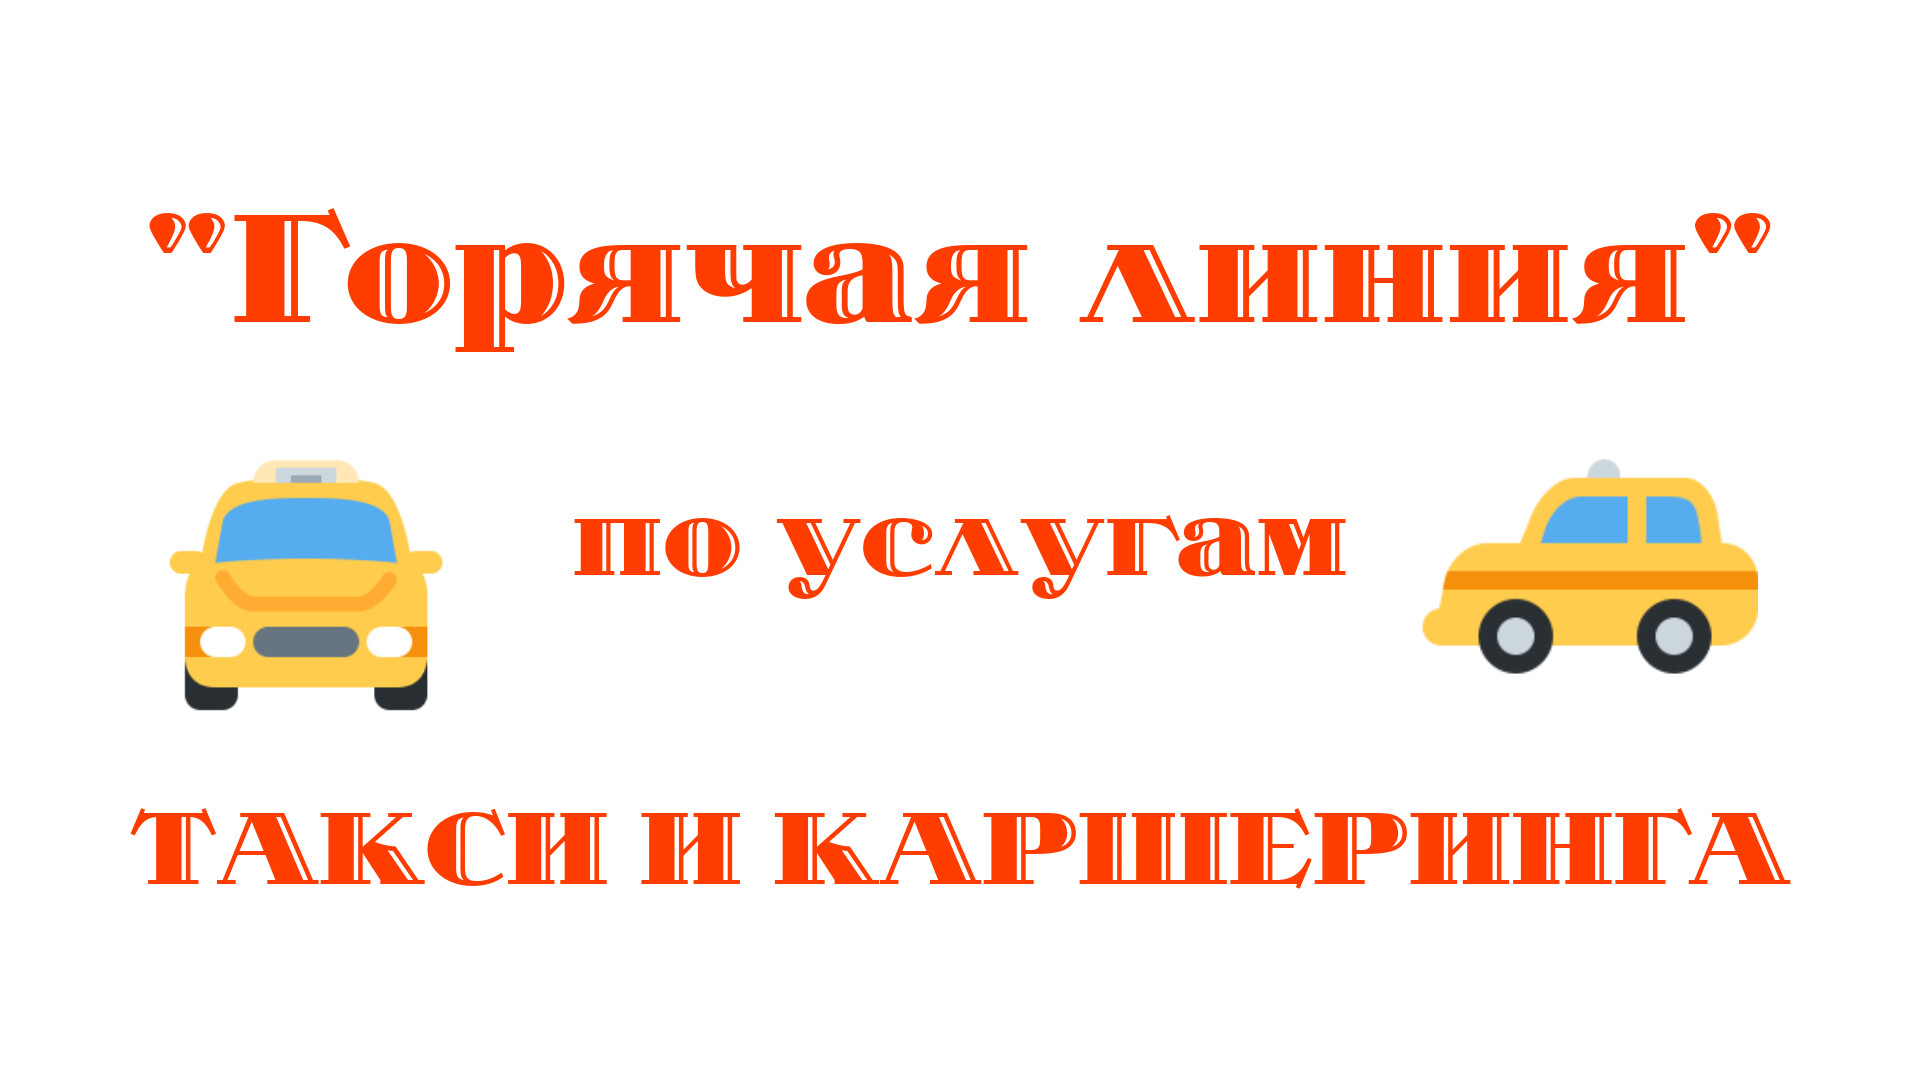 Управление Роспотребнадзора по Тамбовской области проводит тематические консультирования по услугам такси и каршеринга.